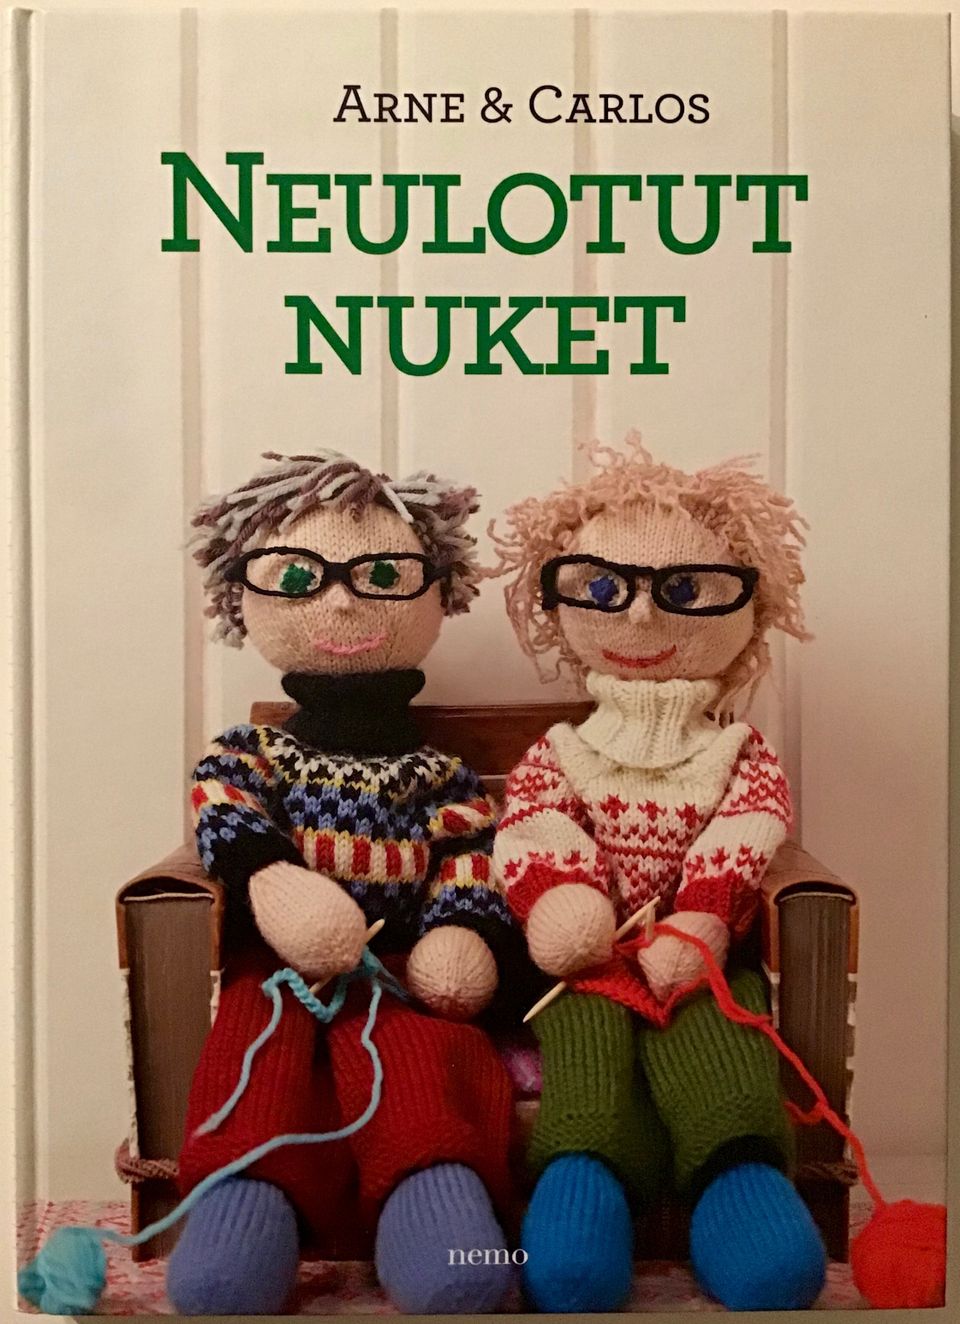 Arne & Carlos - Neulotut nuket